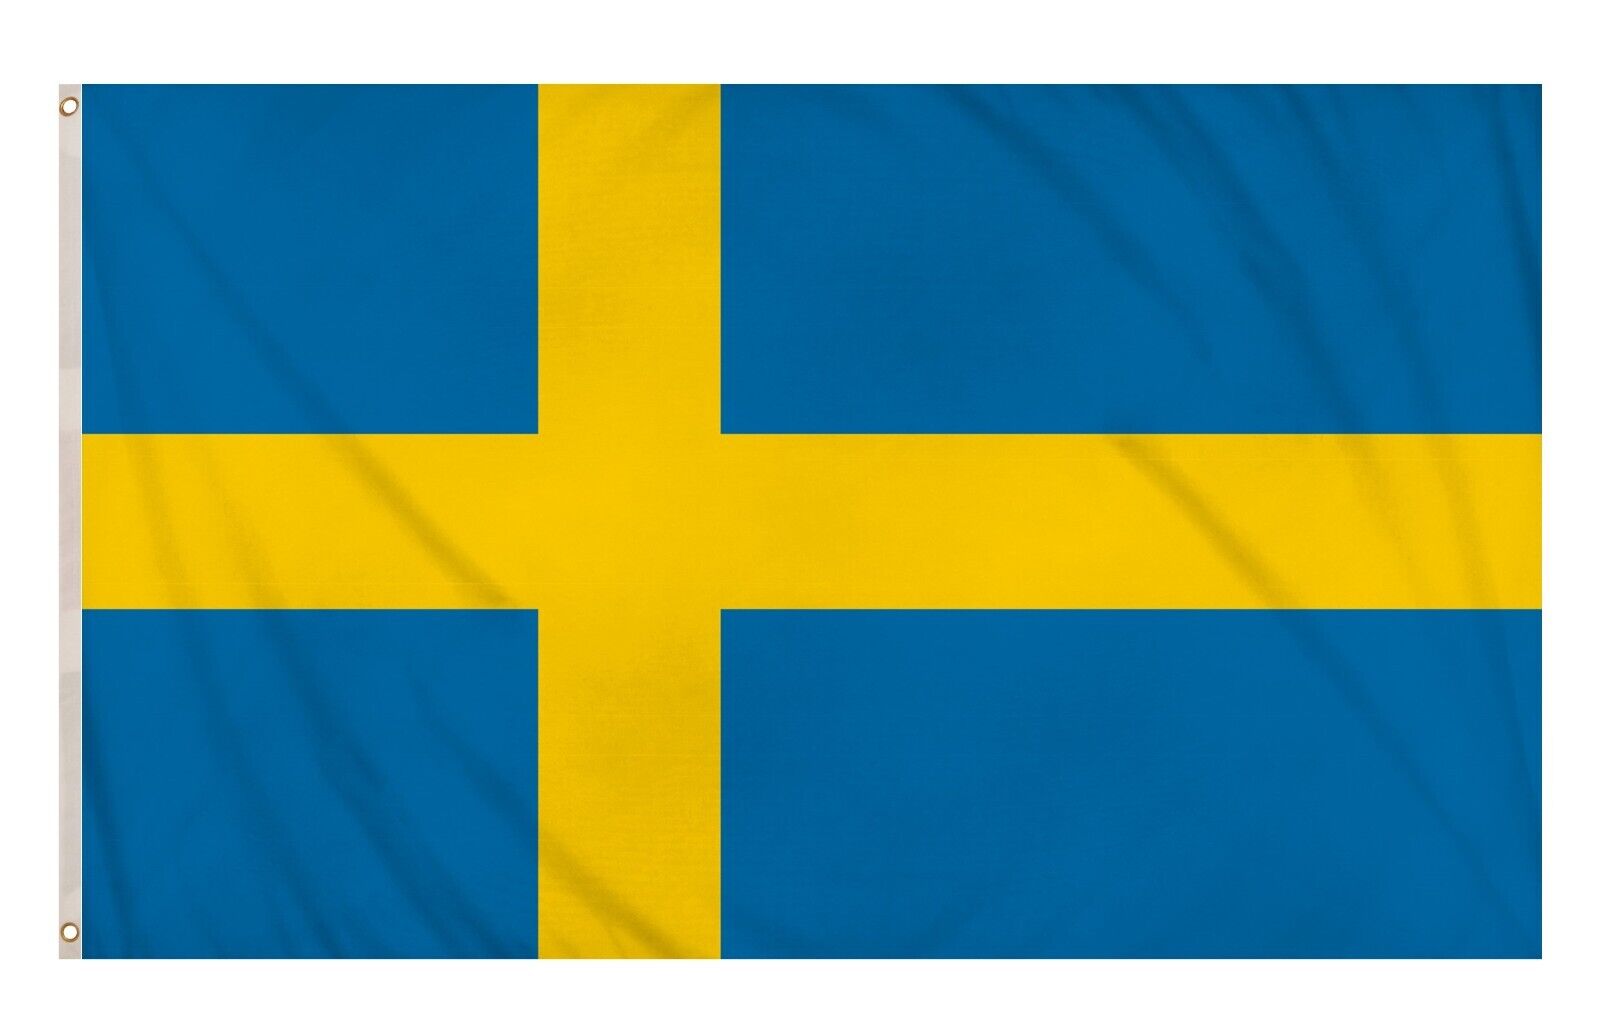 SWEDEN NATIONAL FLAG LARGE 5X3FT PREMIUM DOUBLE STITCH EDGE POLE EYELETS